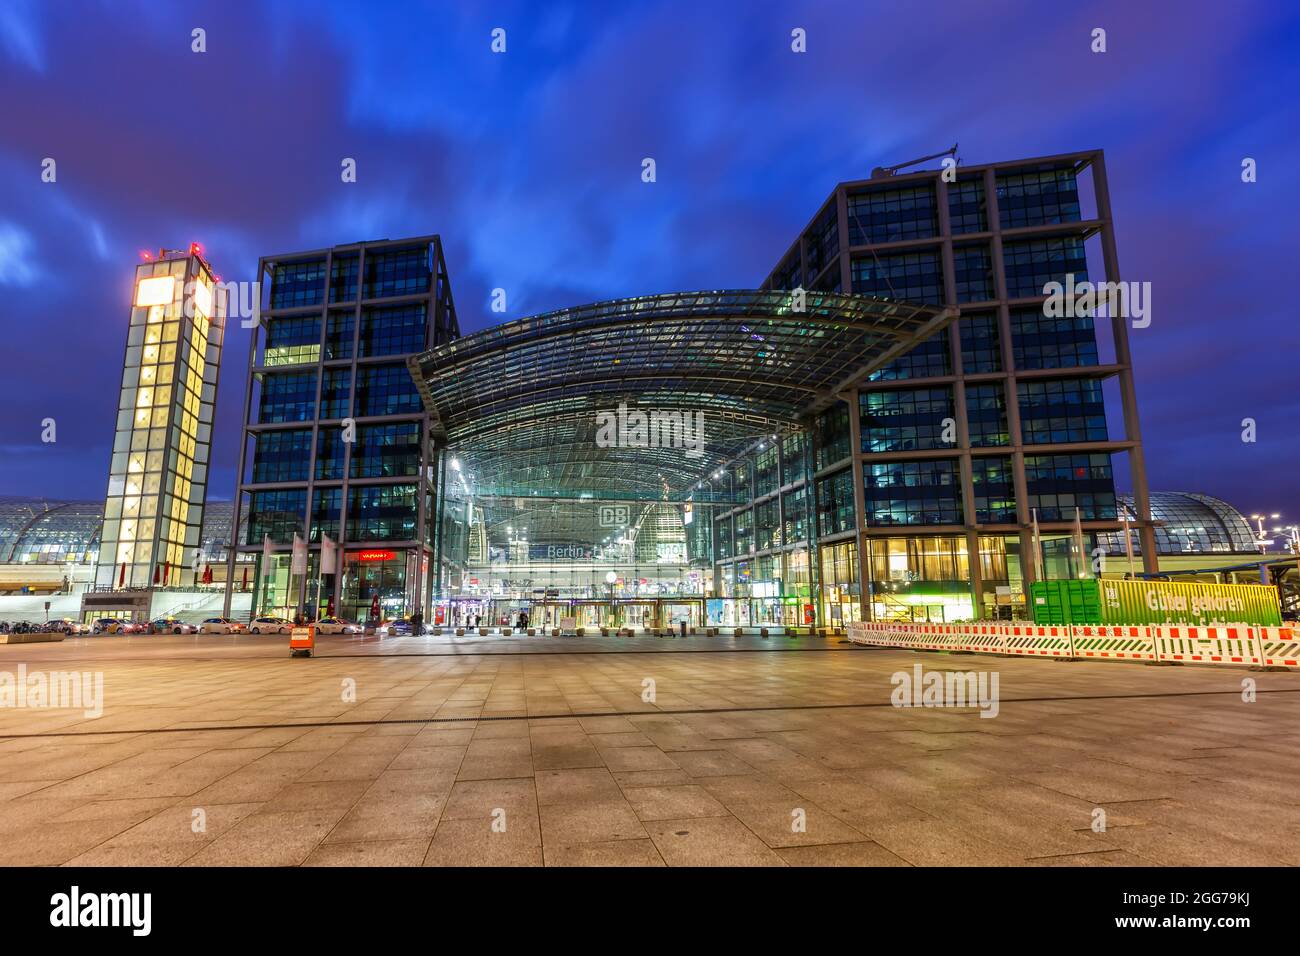 Berlin, Allemagne - 22 avril 2021 : gare centrale de Berlin Hauptbahnhof Hbf train l'architecture moderne au crépuscule en Allemagne. Banque D'Images